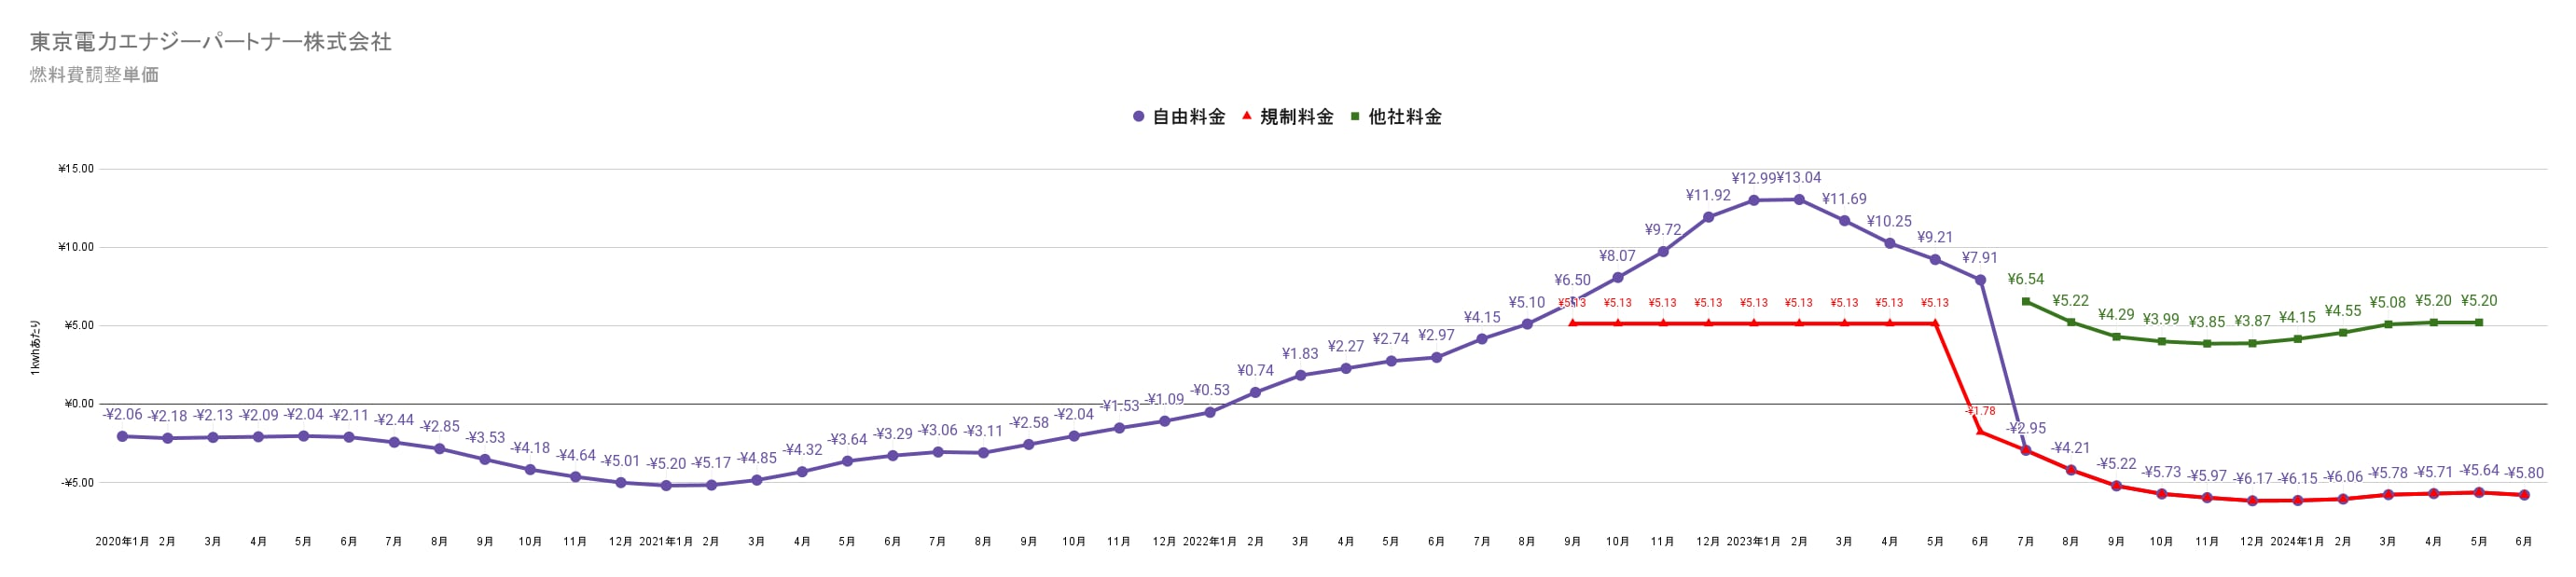 東京電力エナジーパートナーの燃料費調整額単価　過去3年間の推移グラフ